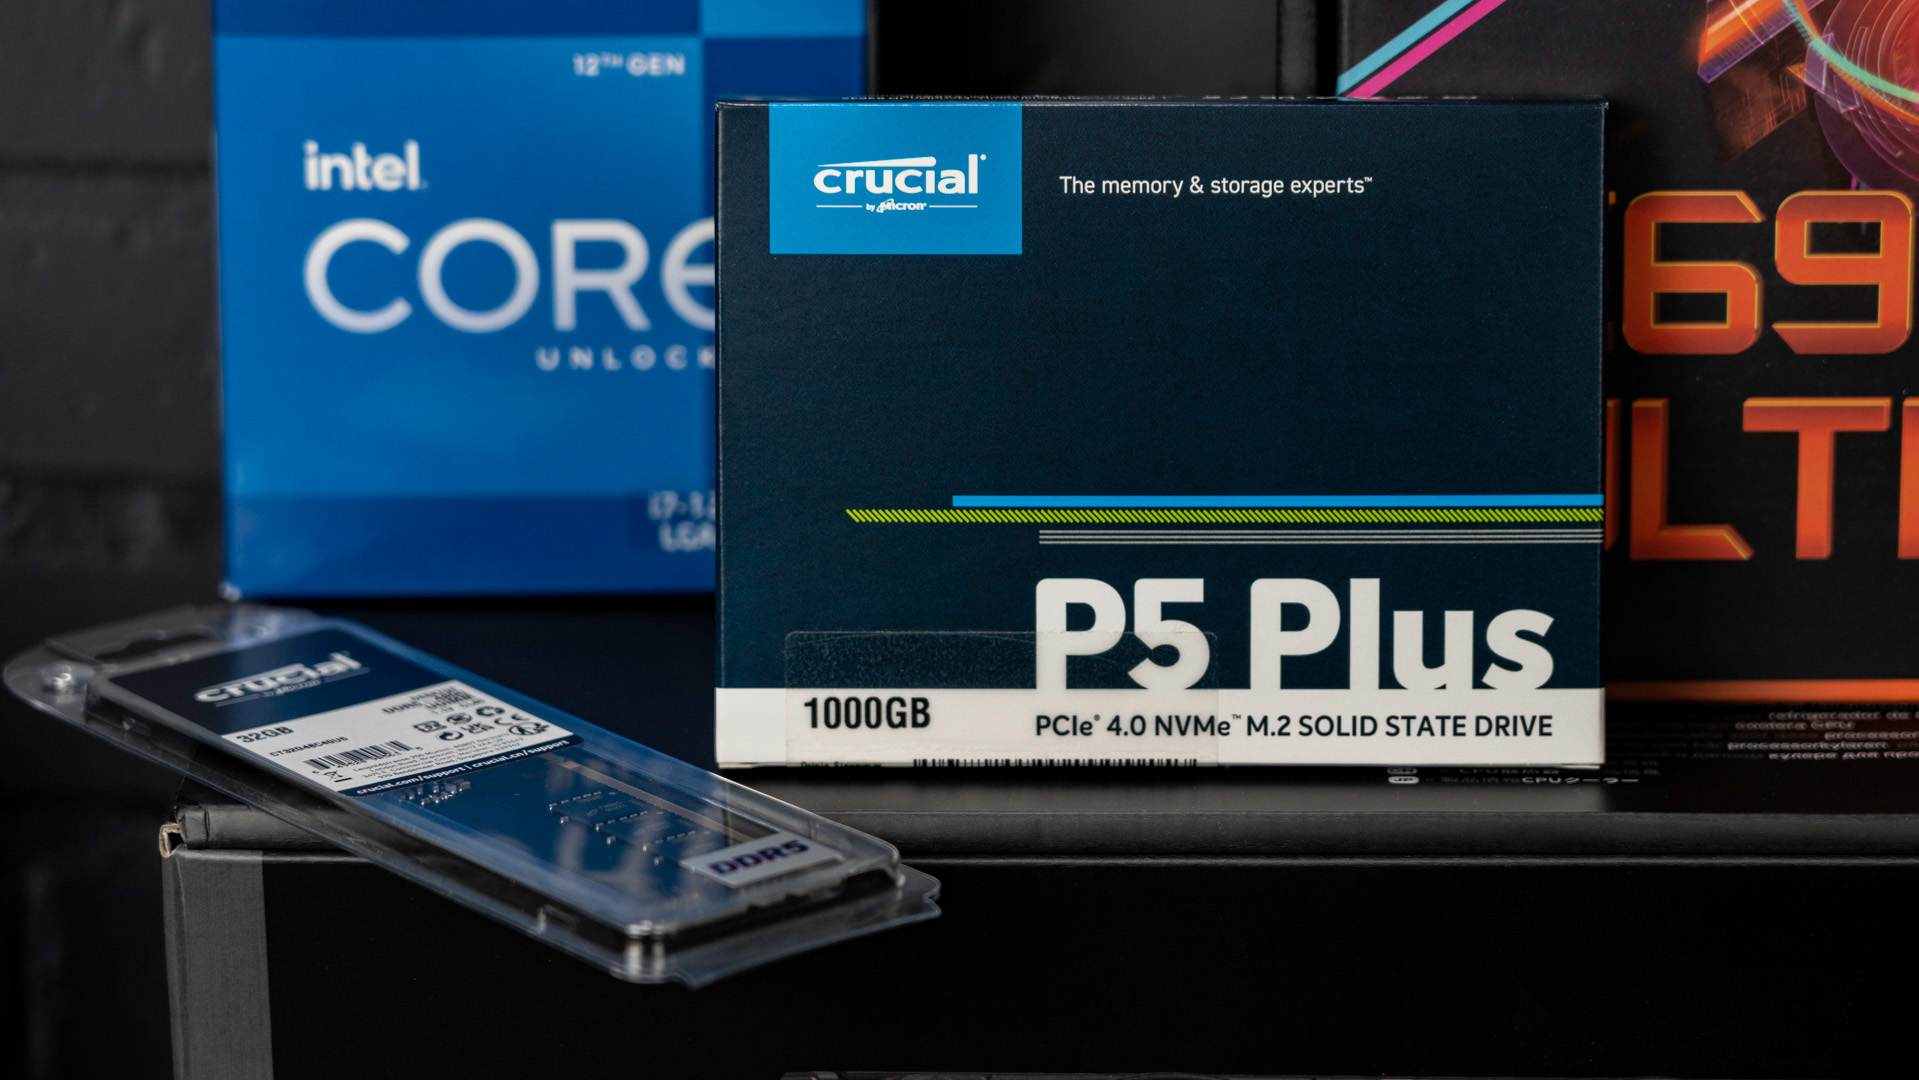 Kurztest: Crucial P5 Plus mit PCIe 4.0 ist schnell und zuverlässig